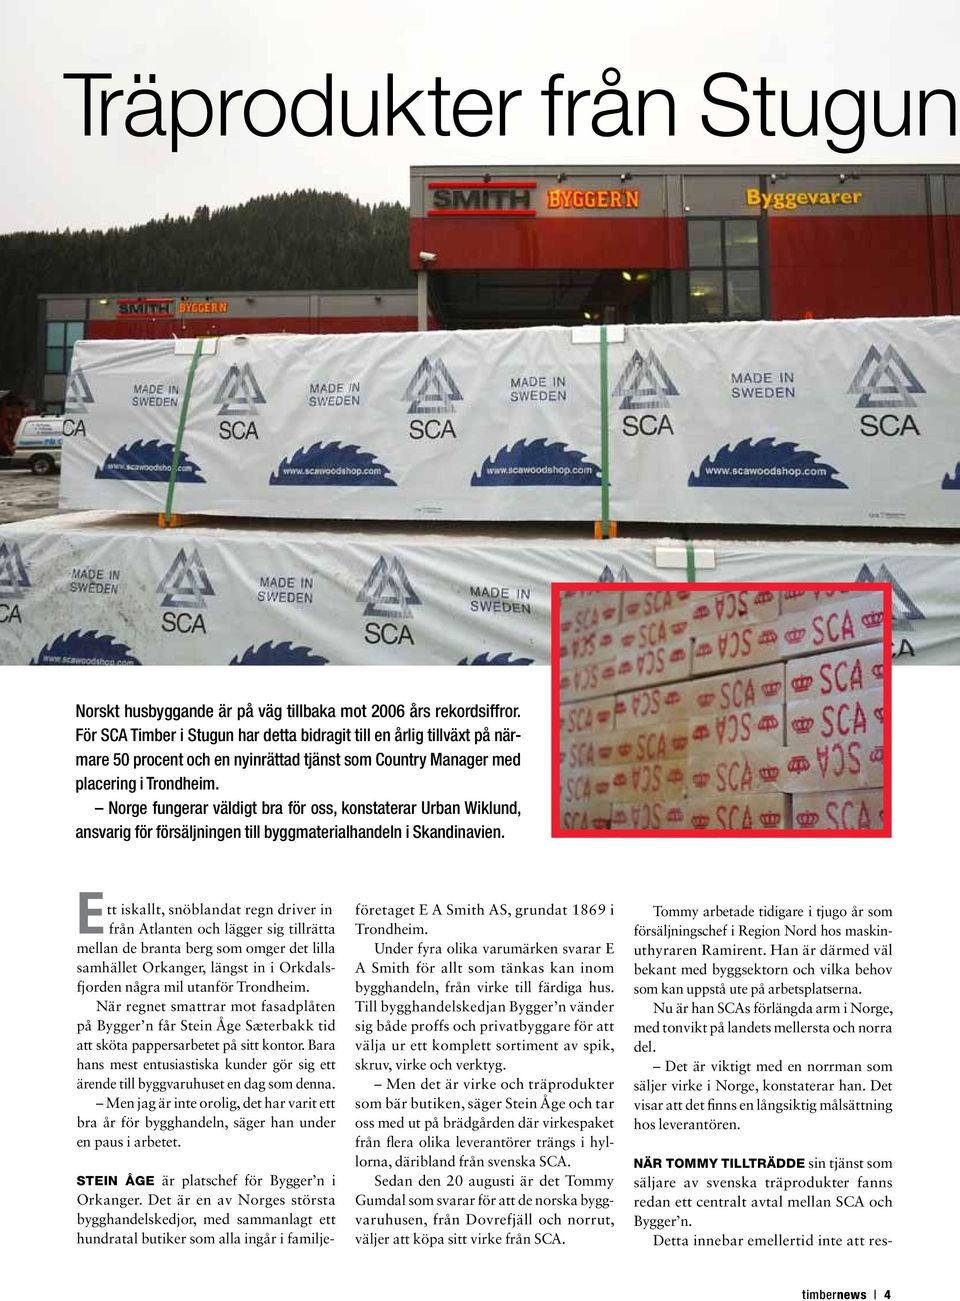 Norge fungerar väldigt bra för oss, konstaterar Urban Wiklund, ansvarig för försäljningen till byggmaterialhandeln i Skandinavien.